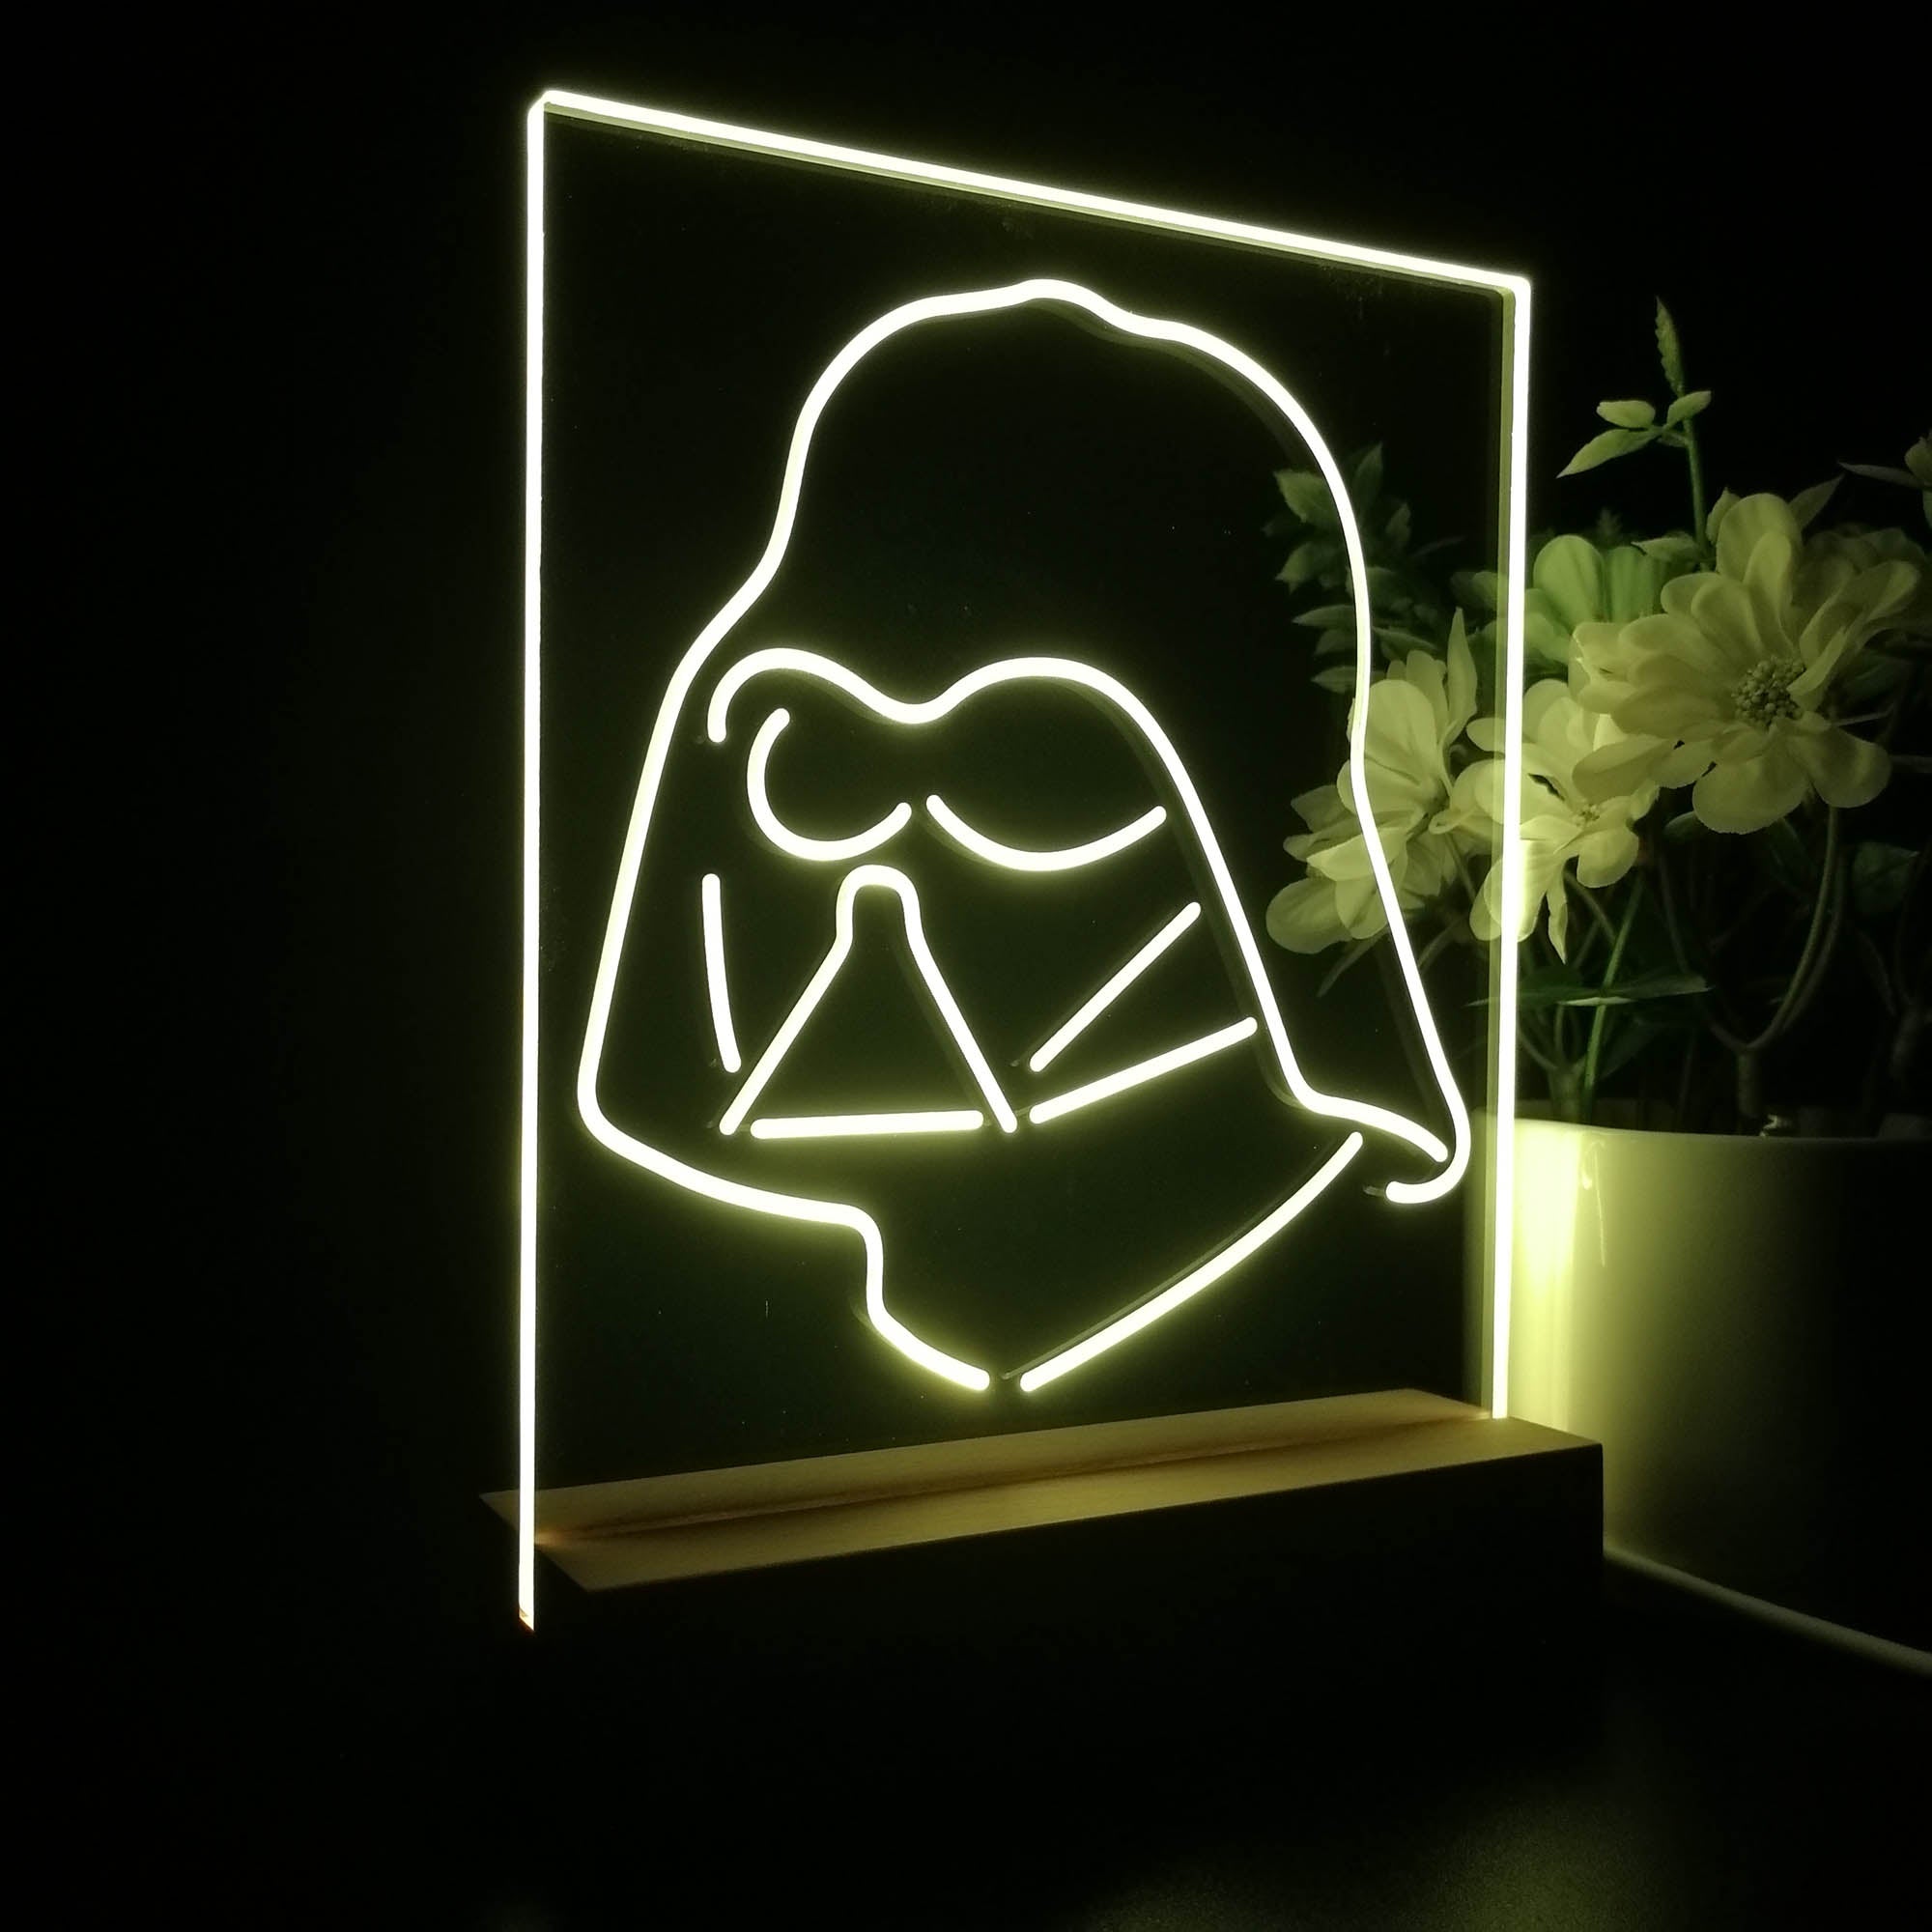 Stars Wars Darth Vader Sith Dark 3D Illusion Night Light Desk Lamp